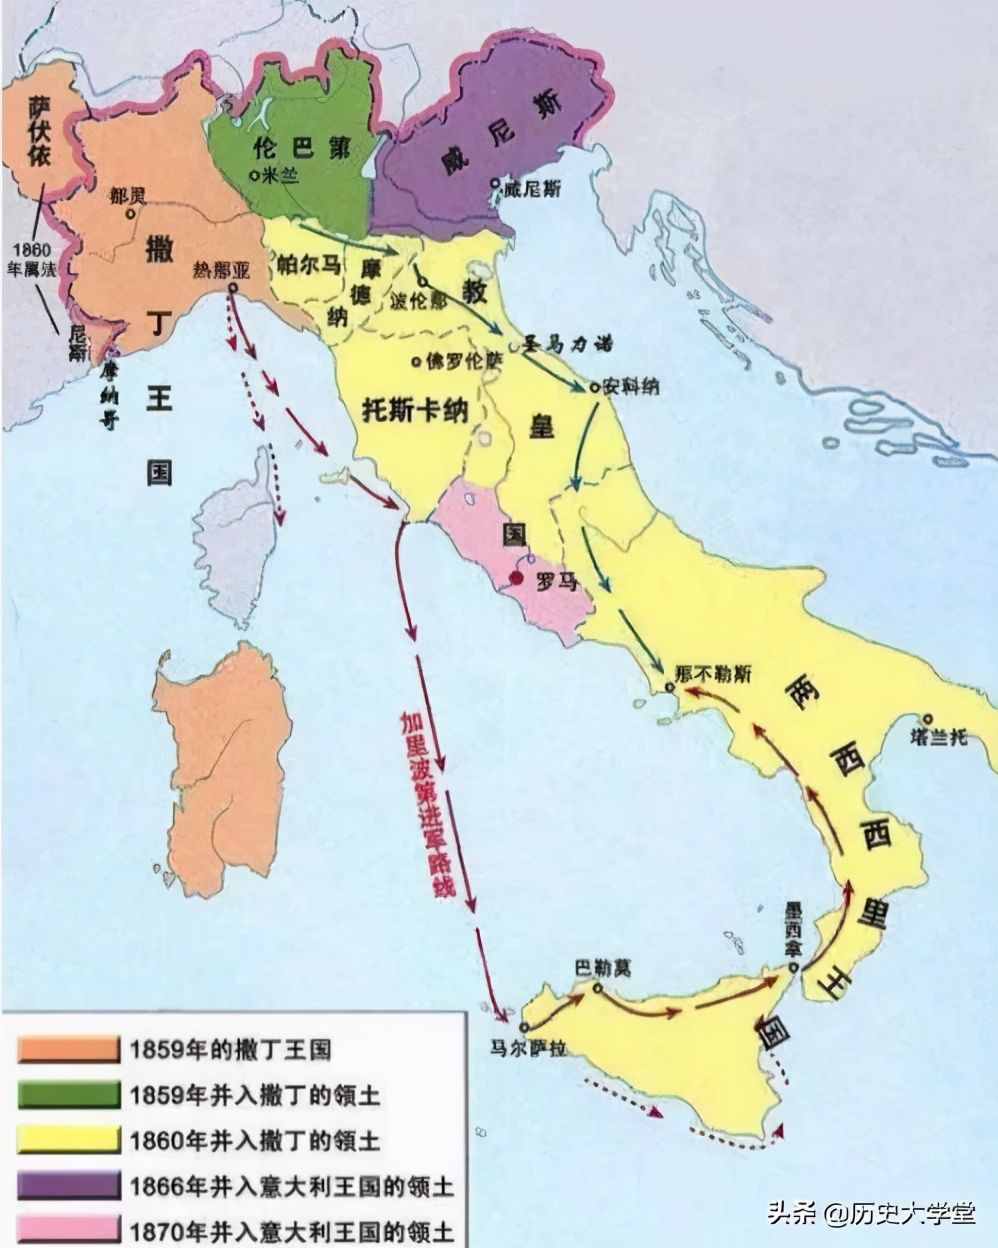 罗马帝国曾那么强大，意大利统一全国后为何不用“罗马”为国名